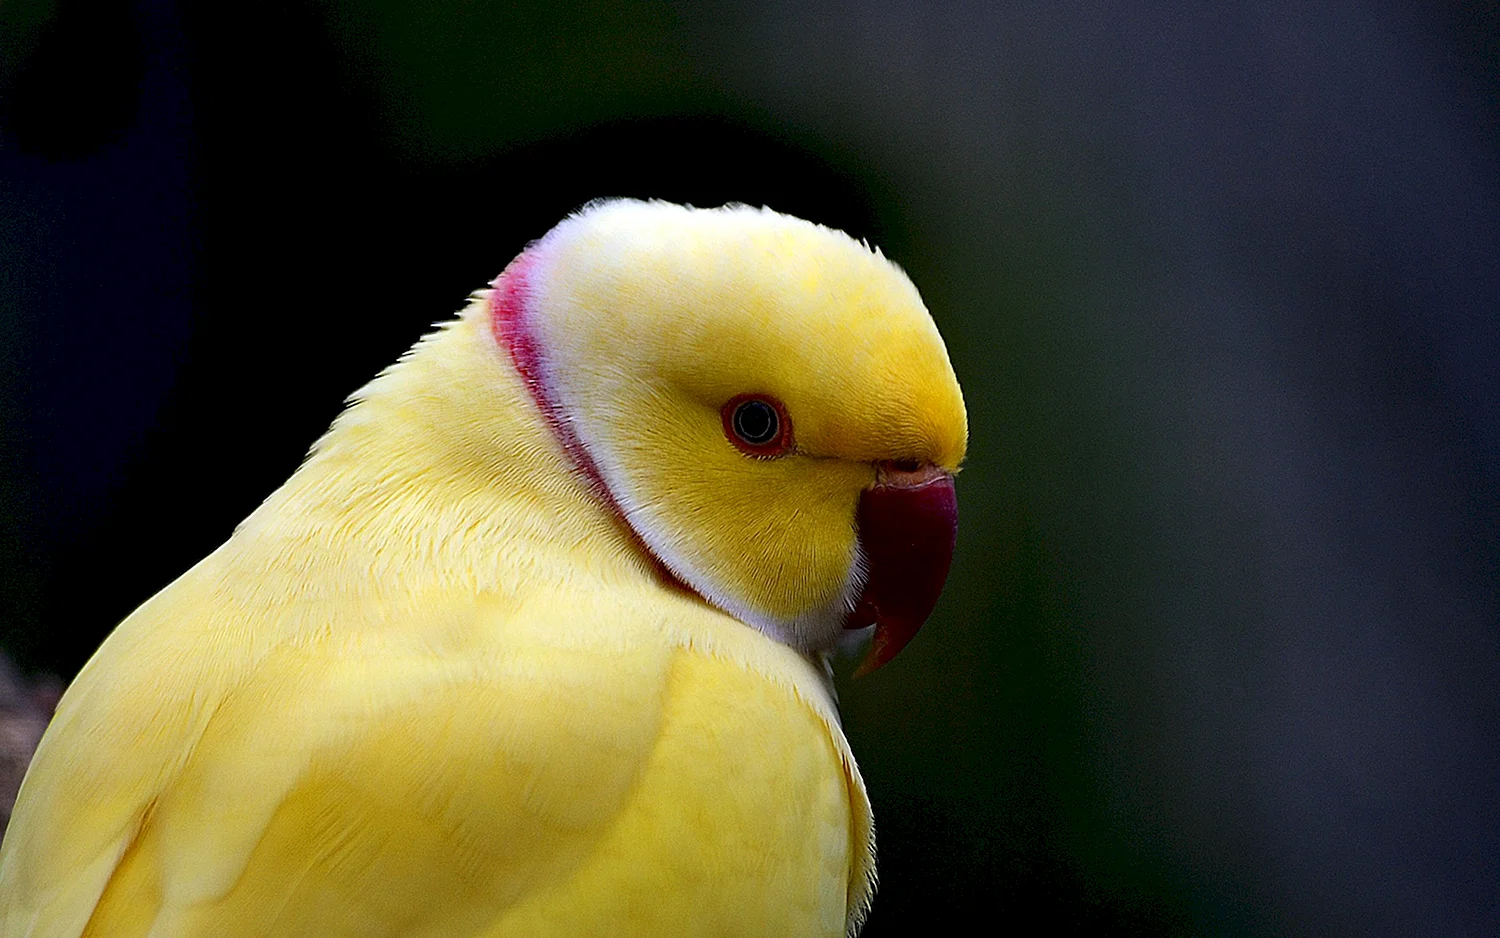 Ожереловый попугай желтый